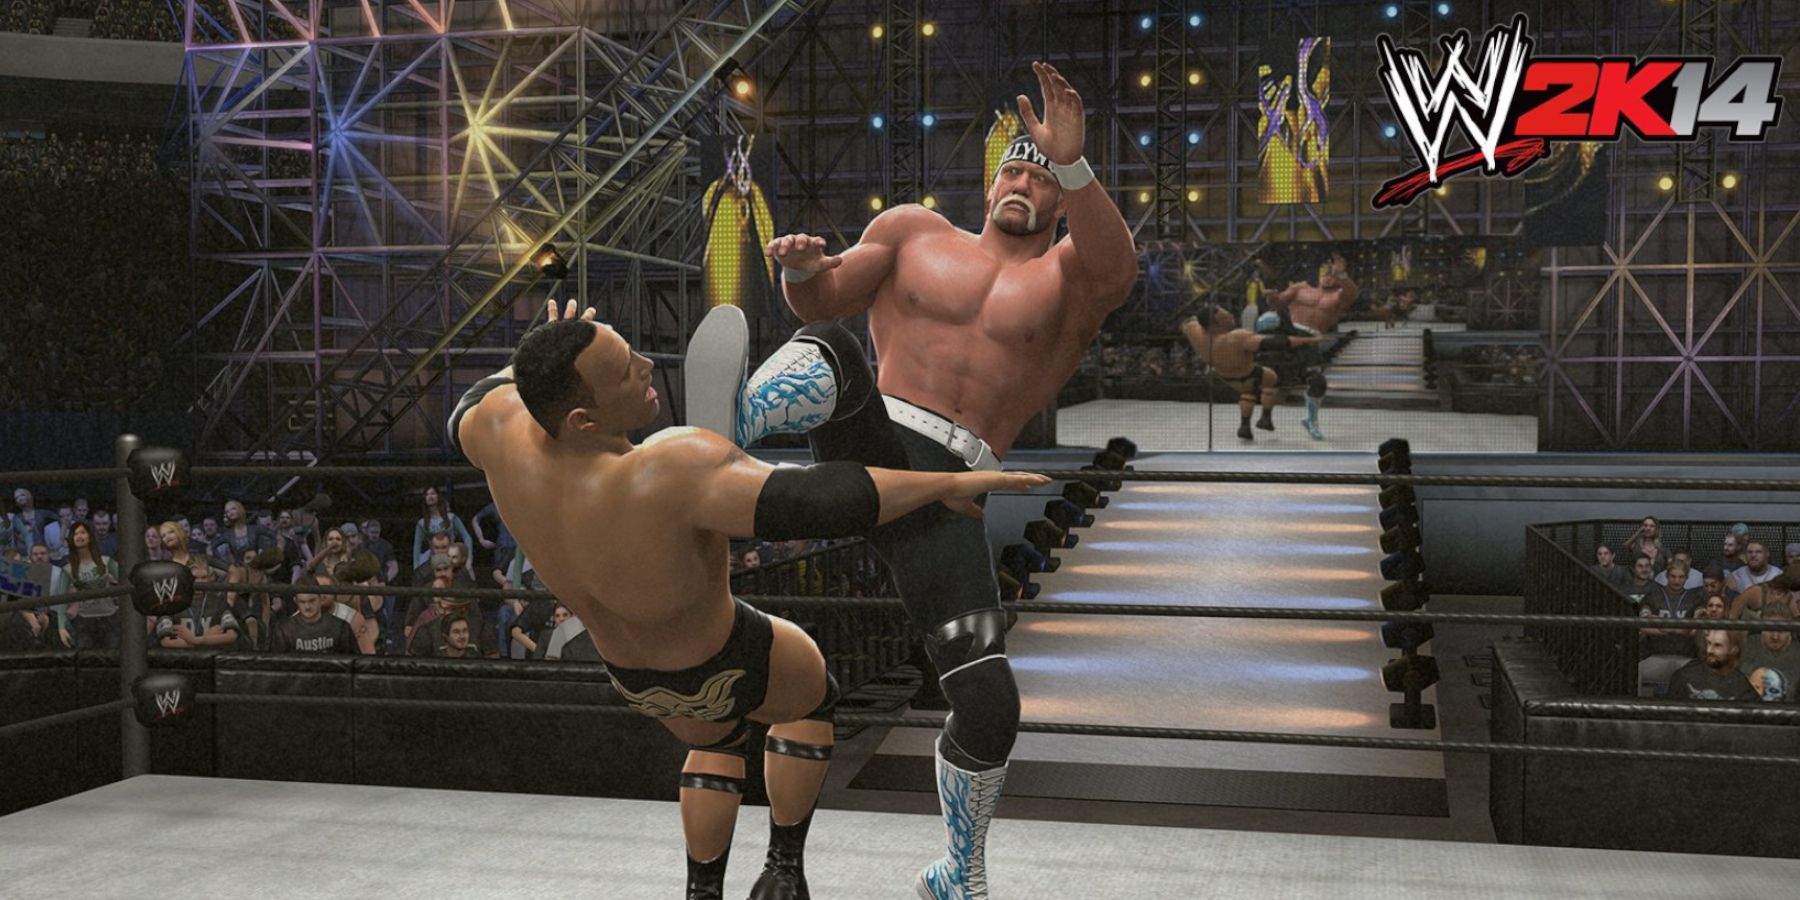 WWE 2K14 Hulk Hogan hits the big boot on the Rock in Showcase mode